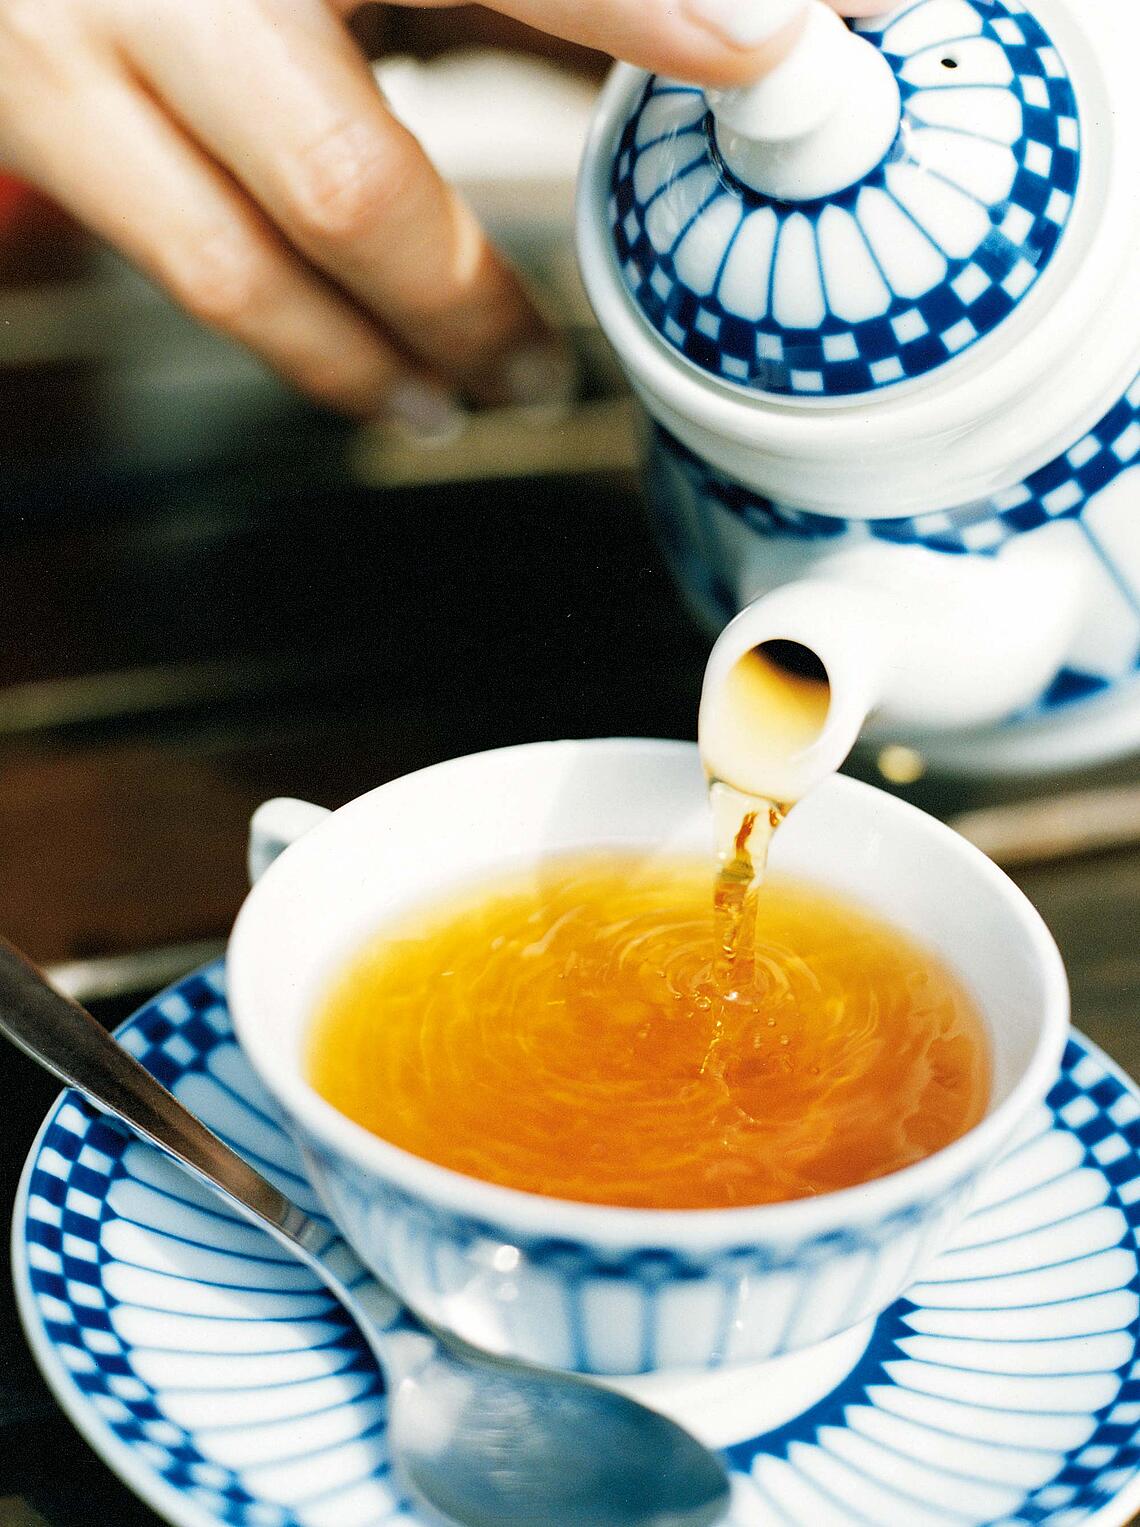 Frauenhand gießt aus einer Teekanne Tee in eine Tasse.